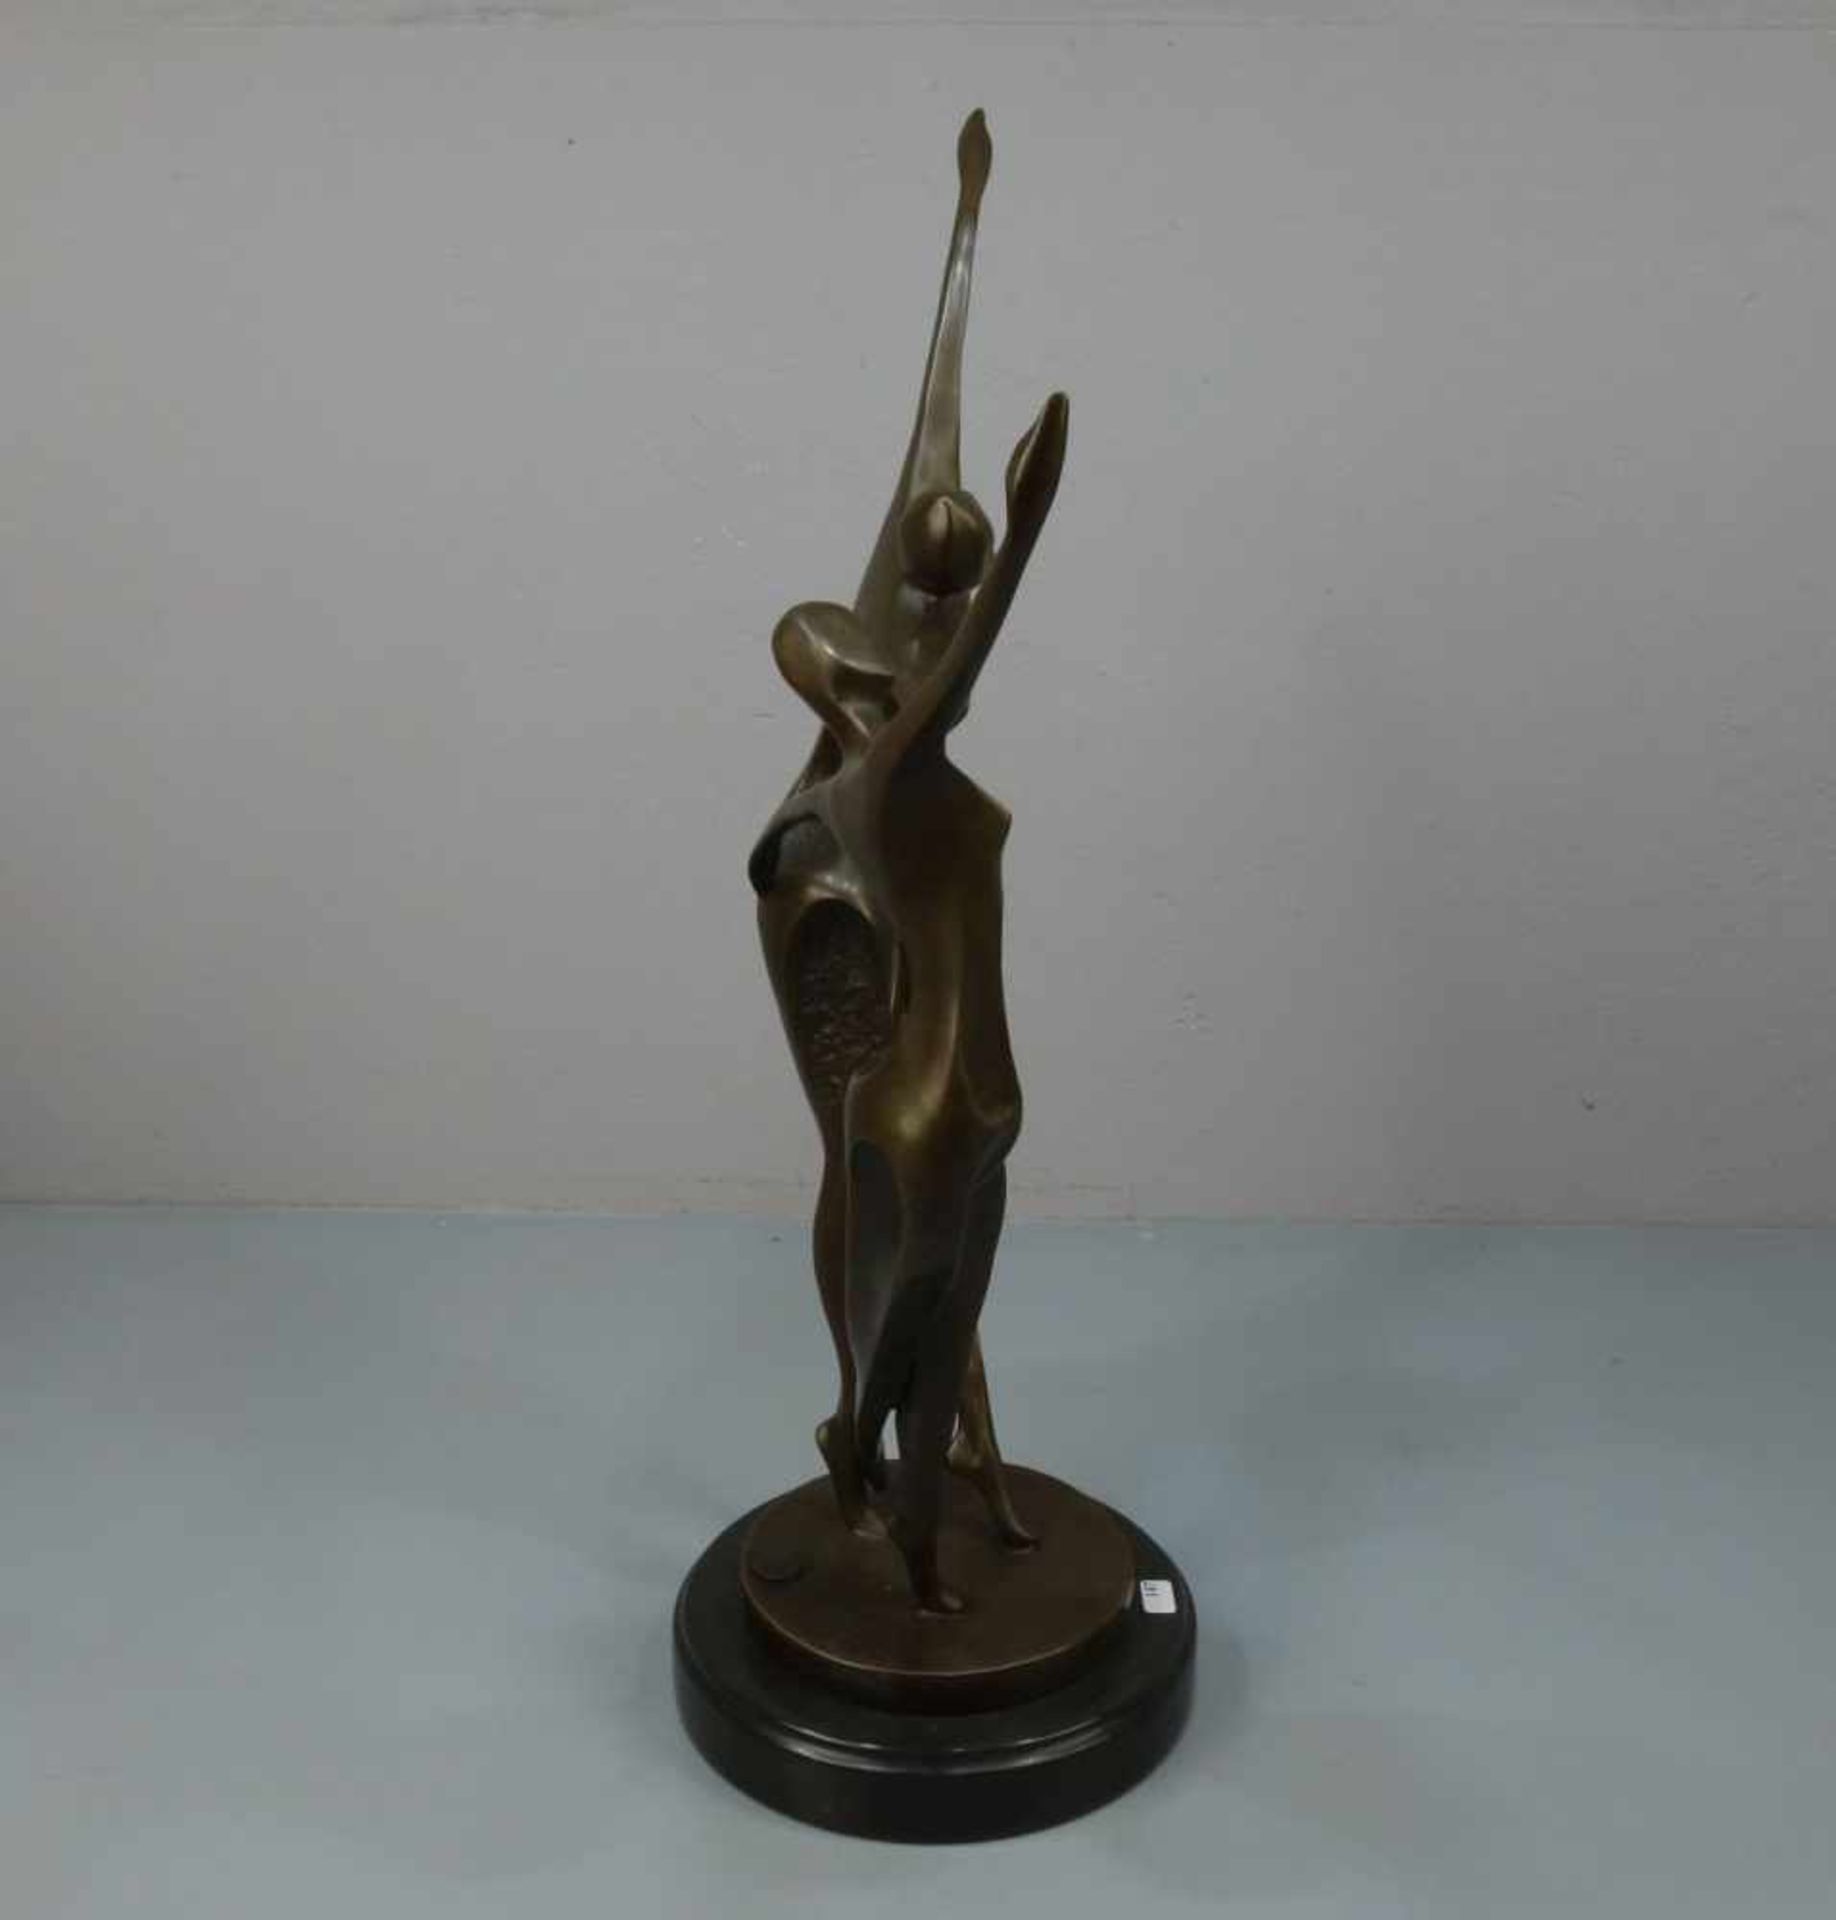 LOPEZ, MIGUEL FERNANDO (auch Milo, geb. 1955 in Lissabon), Skulptur / sculpture: "Tanzendes Paar", - Bild 4 aus 6